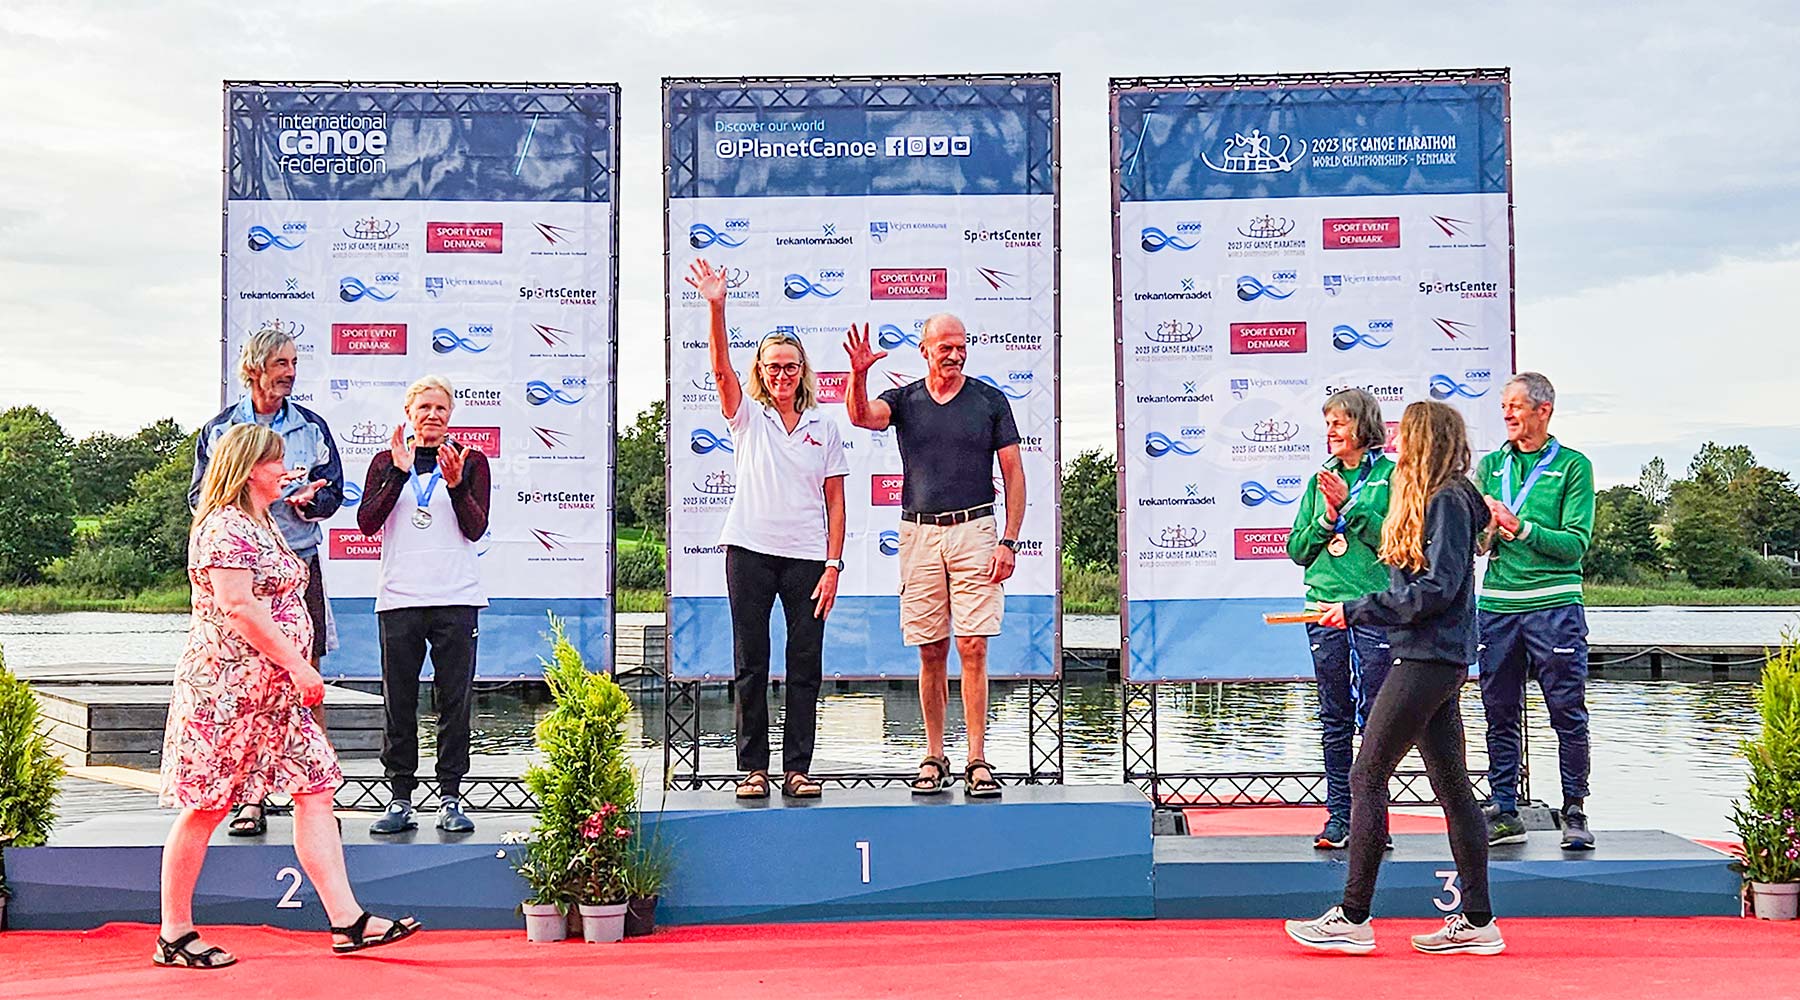 Anette Henckel og Michael Thers indtager pladsen øverst på podiet efter stærk præstation ved årets verdensmesterskab i kano- og kajakmaraton.